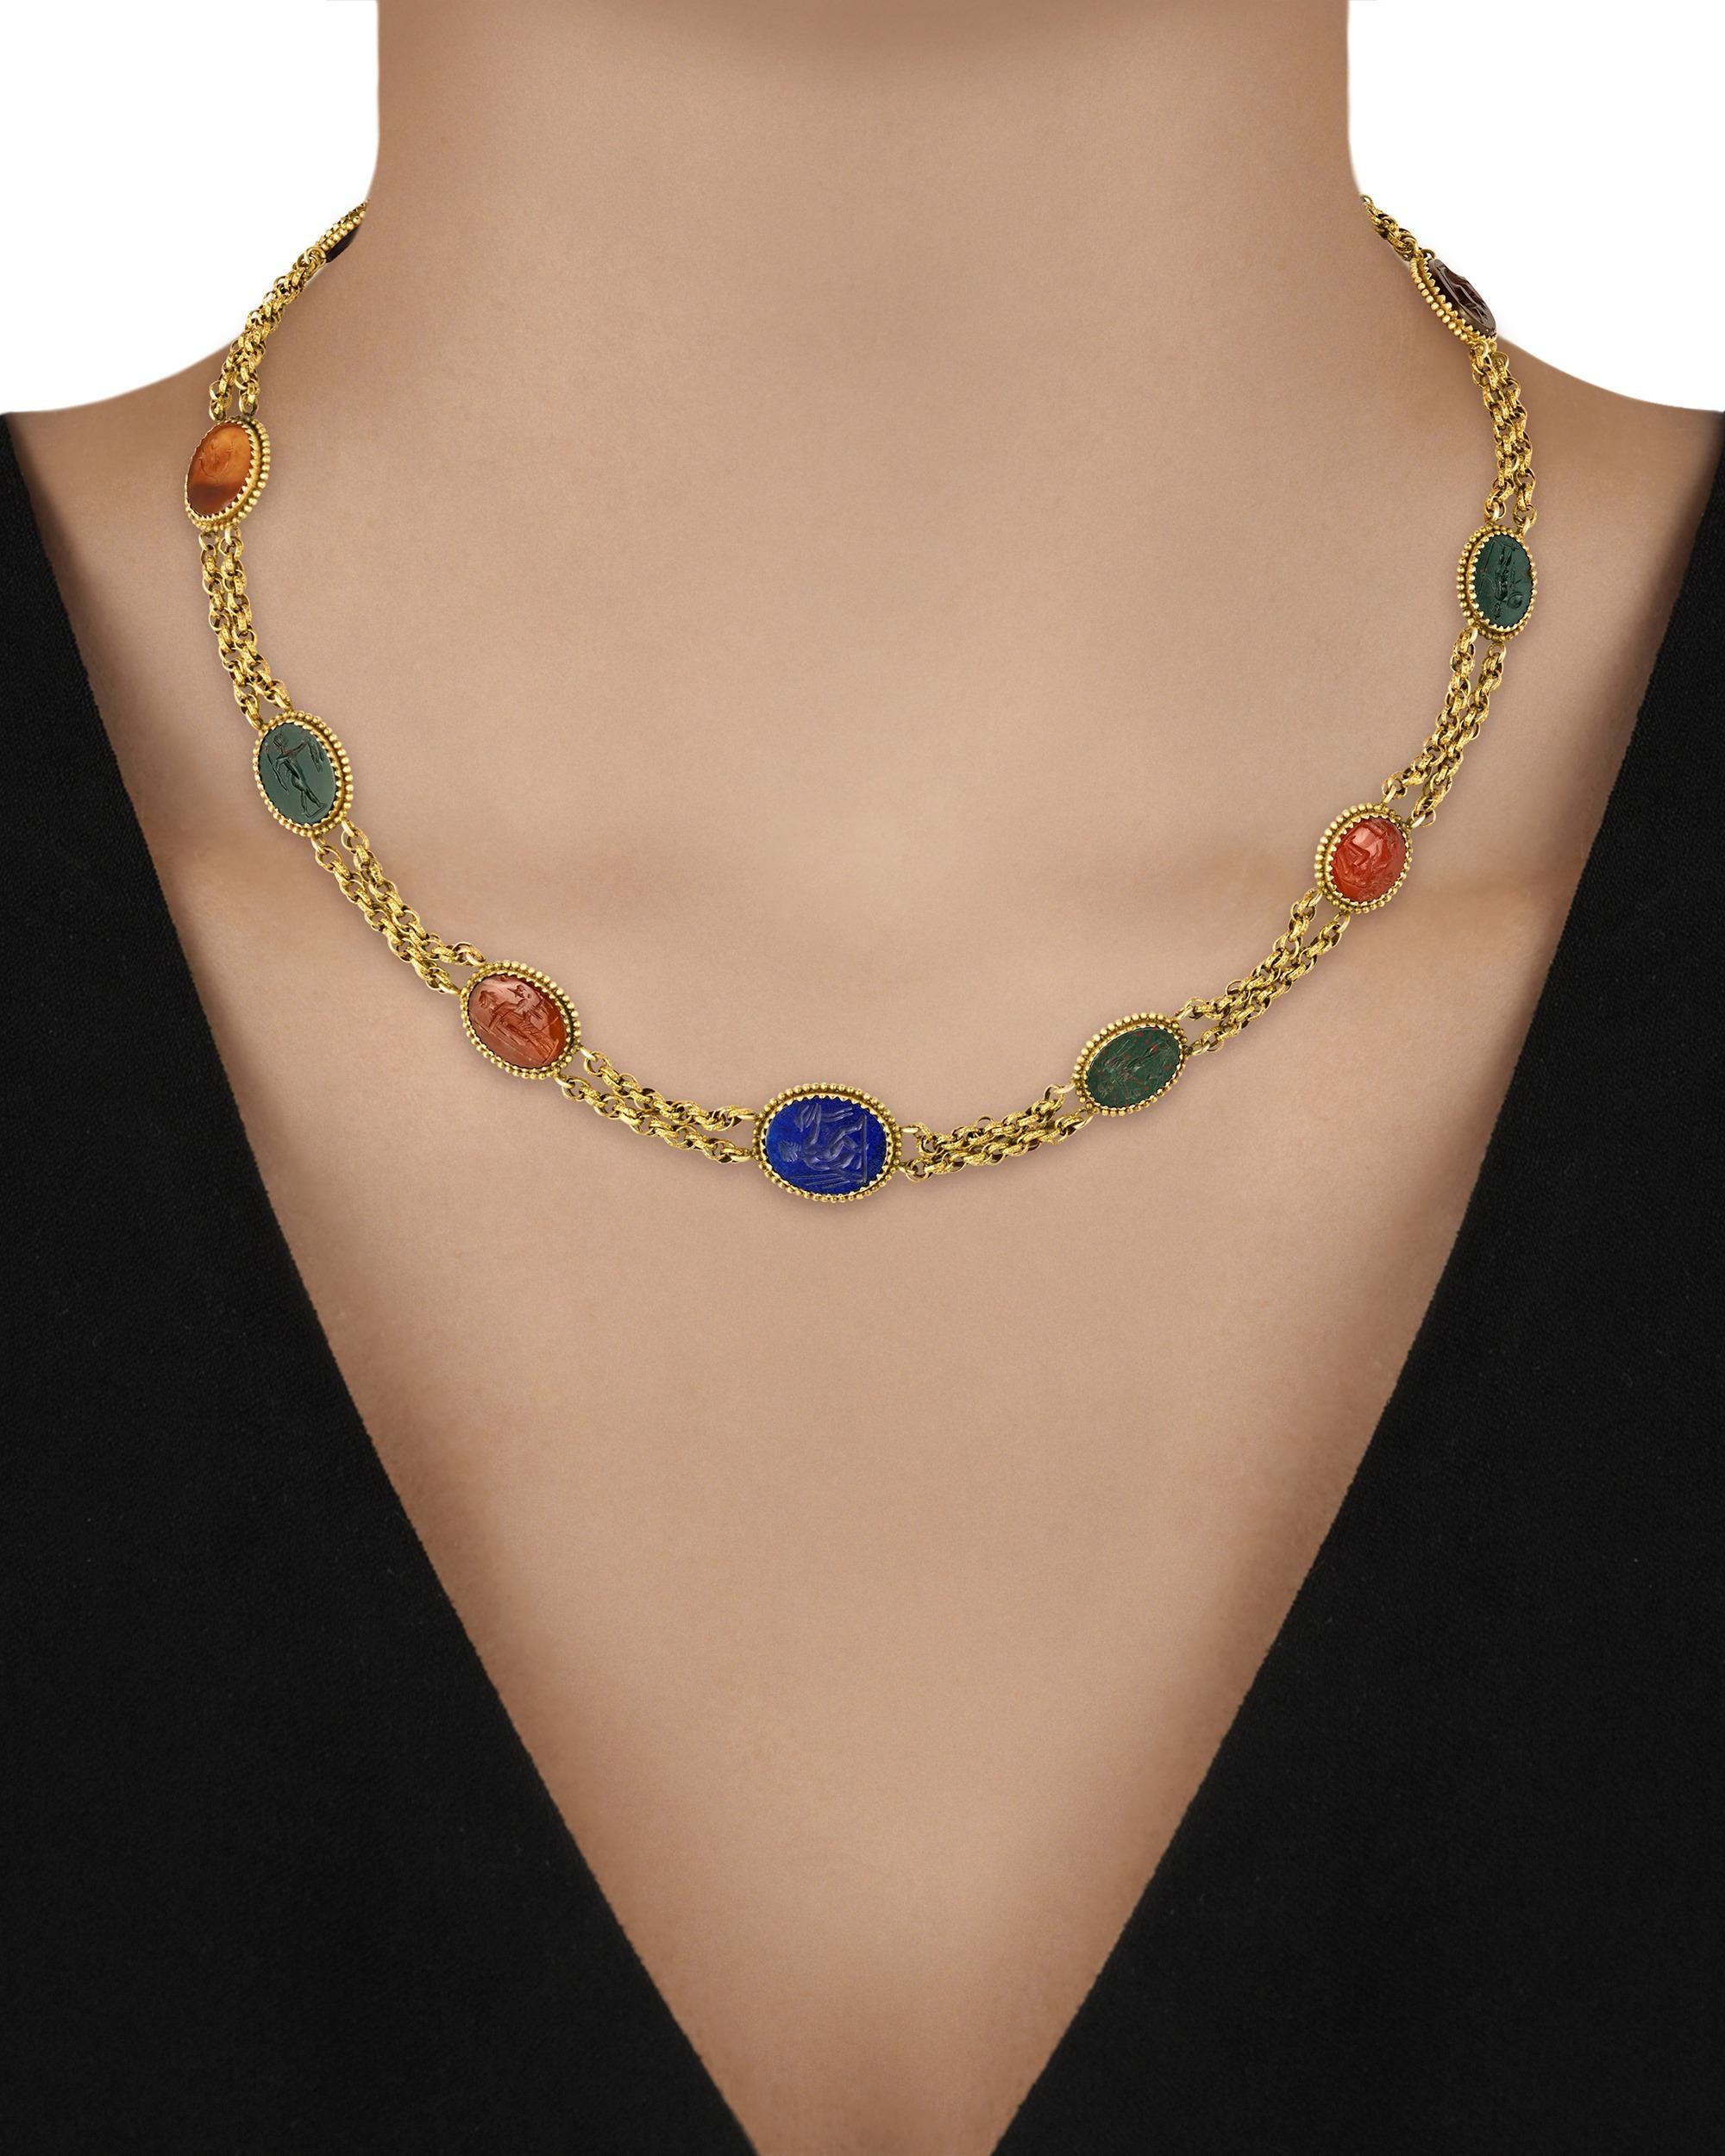 intaglio necklace vintage